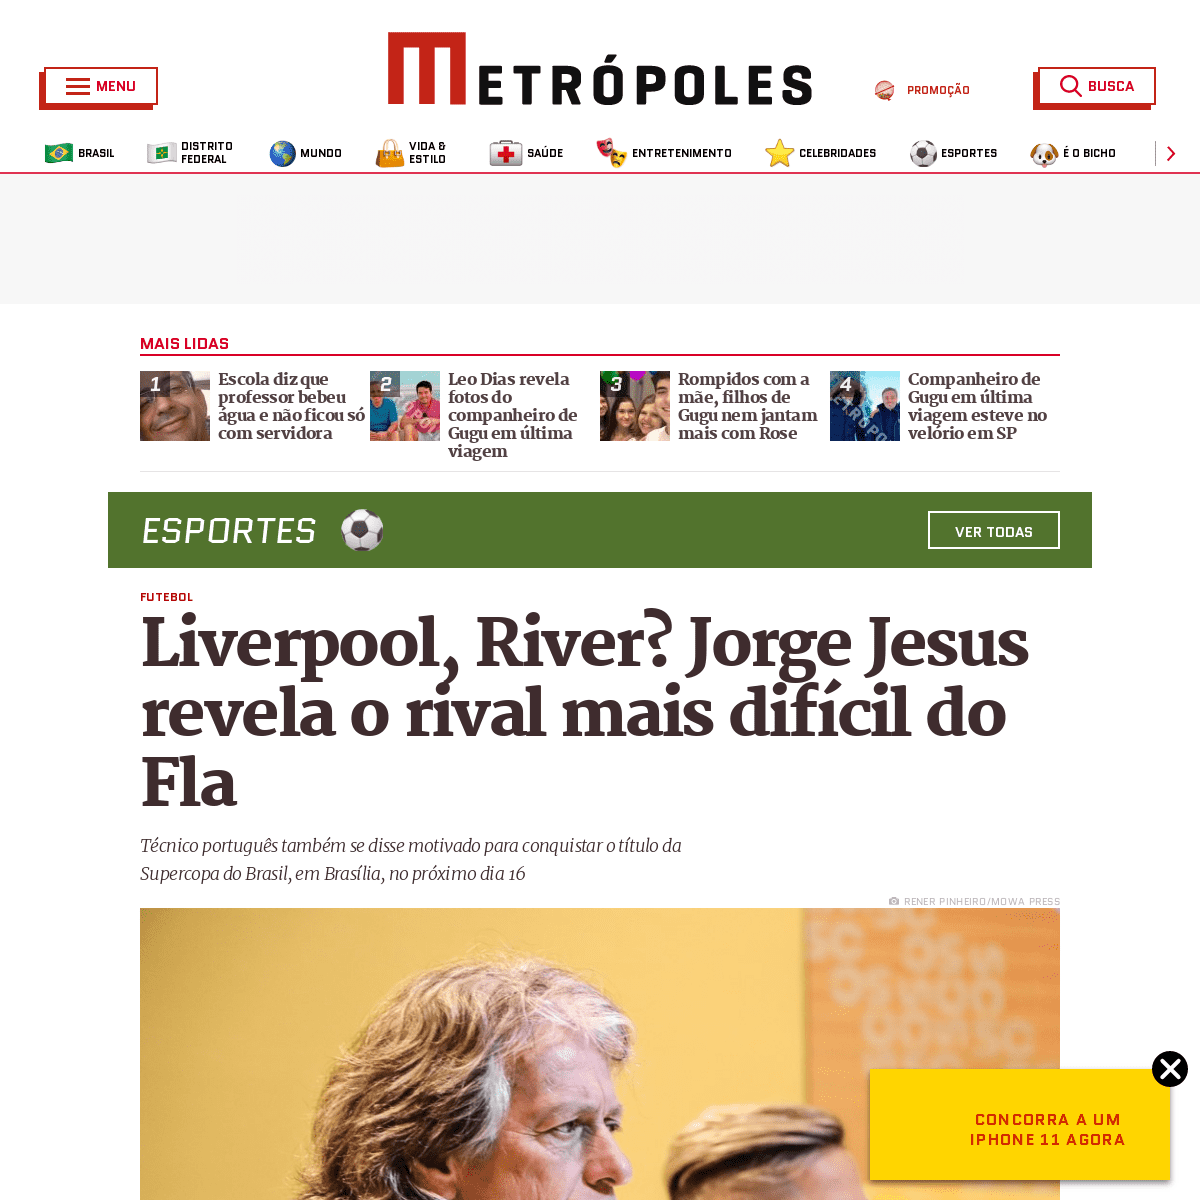 A complete backup of www.metropoles.com/esportes/futebol/liverpool-river-jorge-jesus-revela-o-rival-mais-dificil-do-flamengo